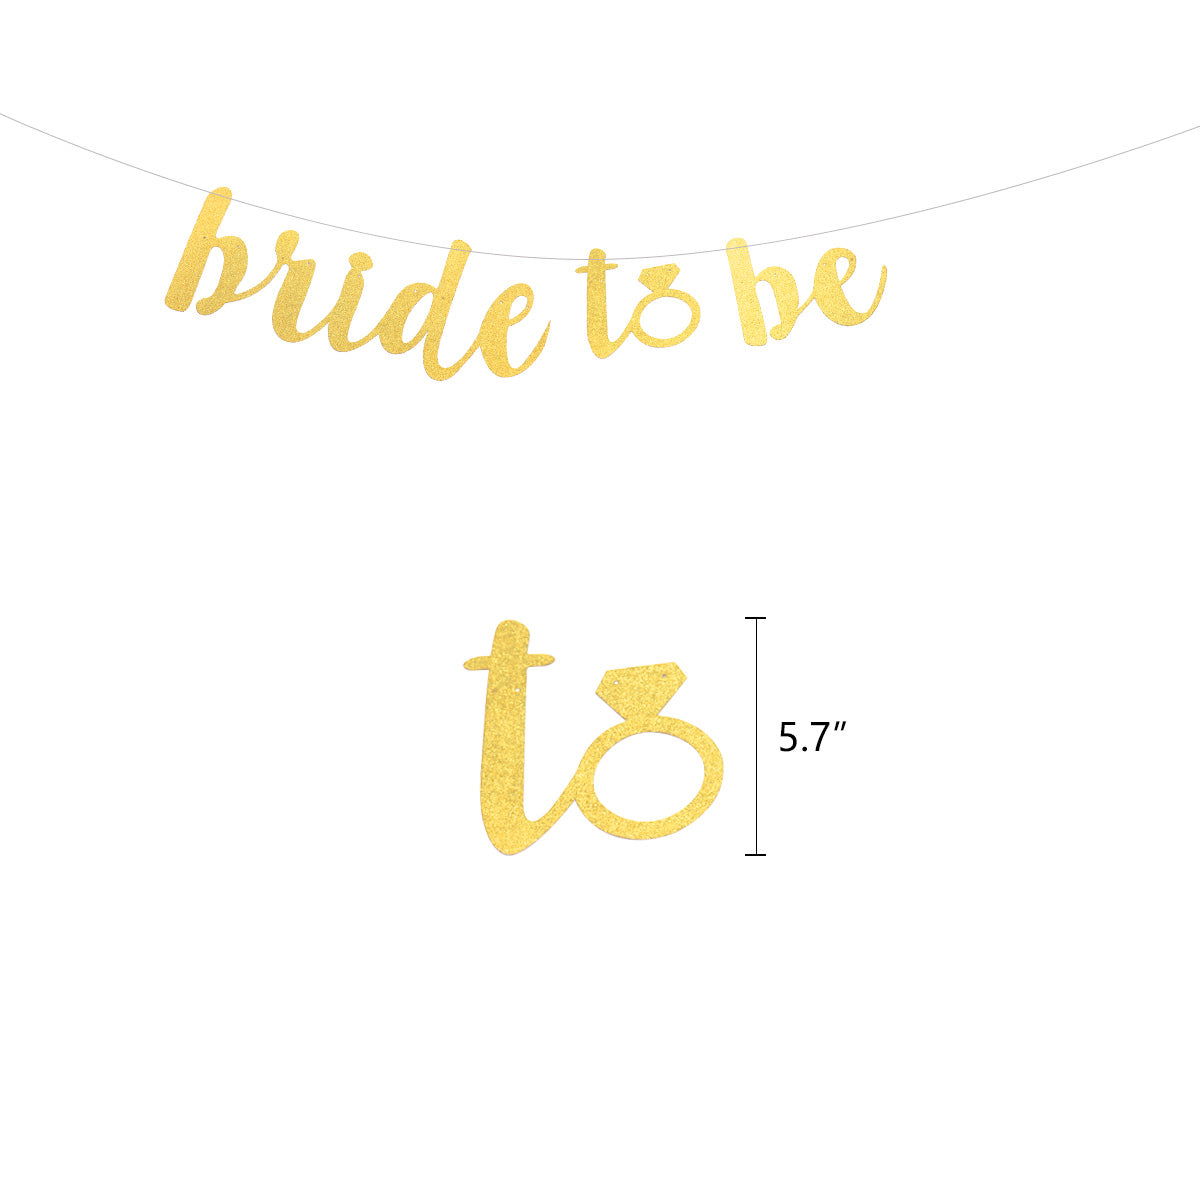 Gold Bridal Shower Decoration Kit - 21 Pieces! –